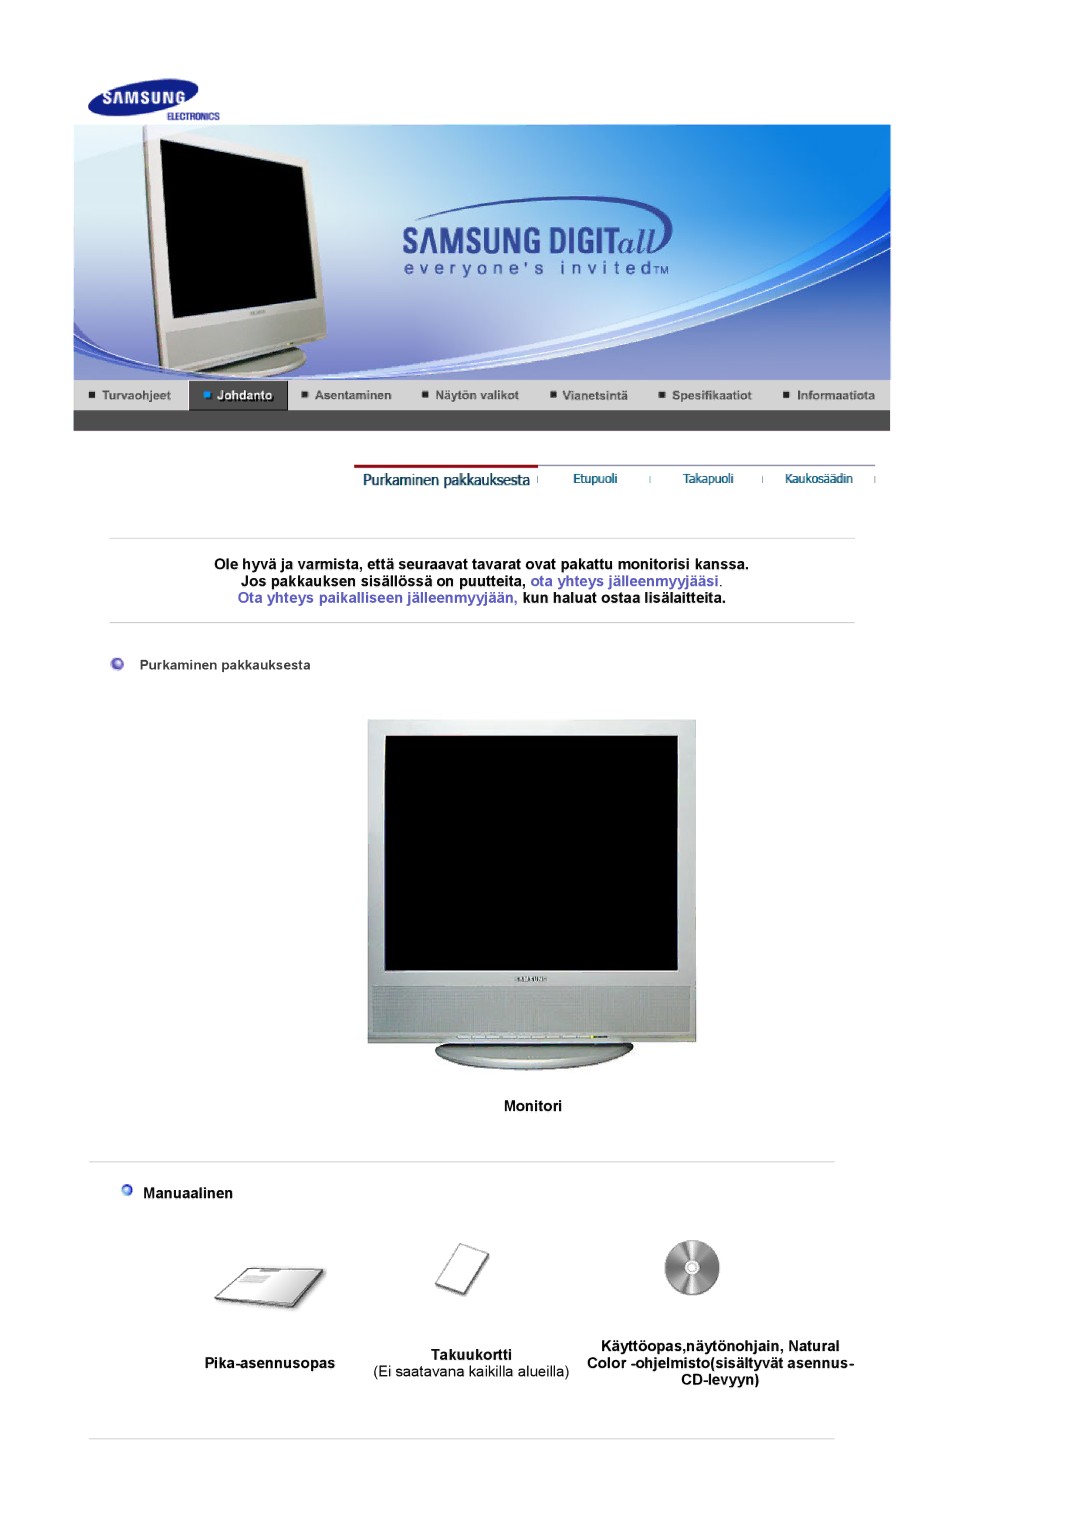 Samsung LS17MCASS/EDC manual Monitori Manuaalinen, Pika-asennusopas, Ei saatavana kaikilla alueilla, CD-levyyn 